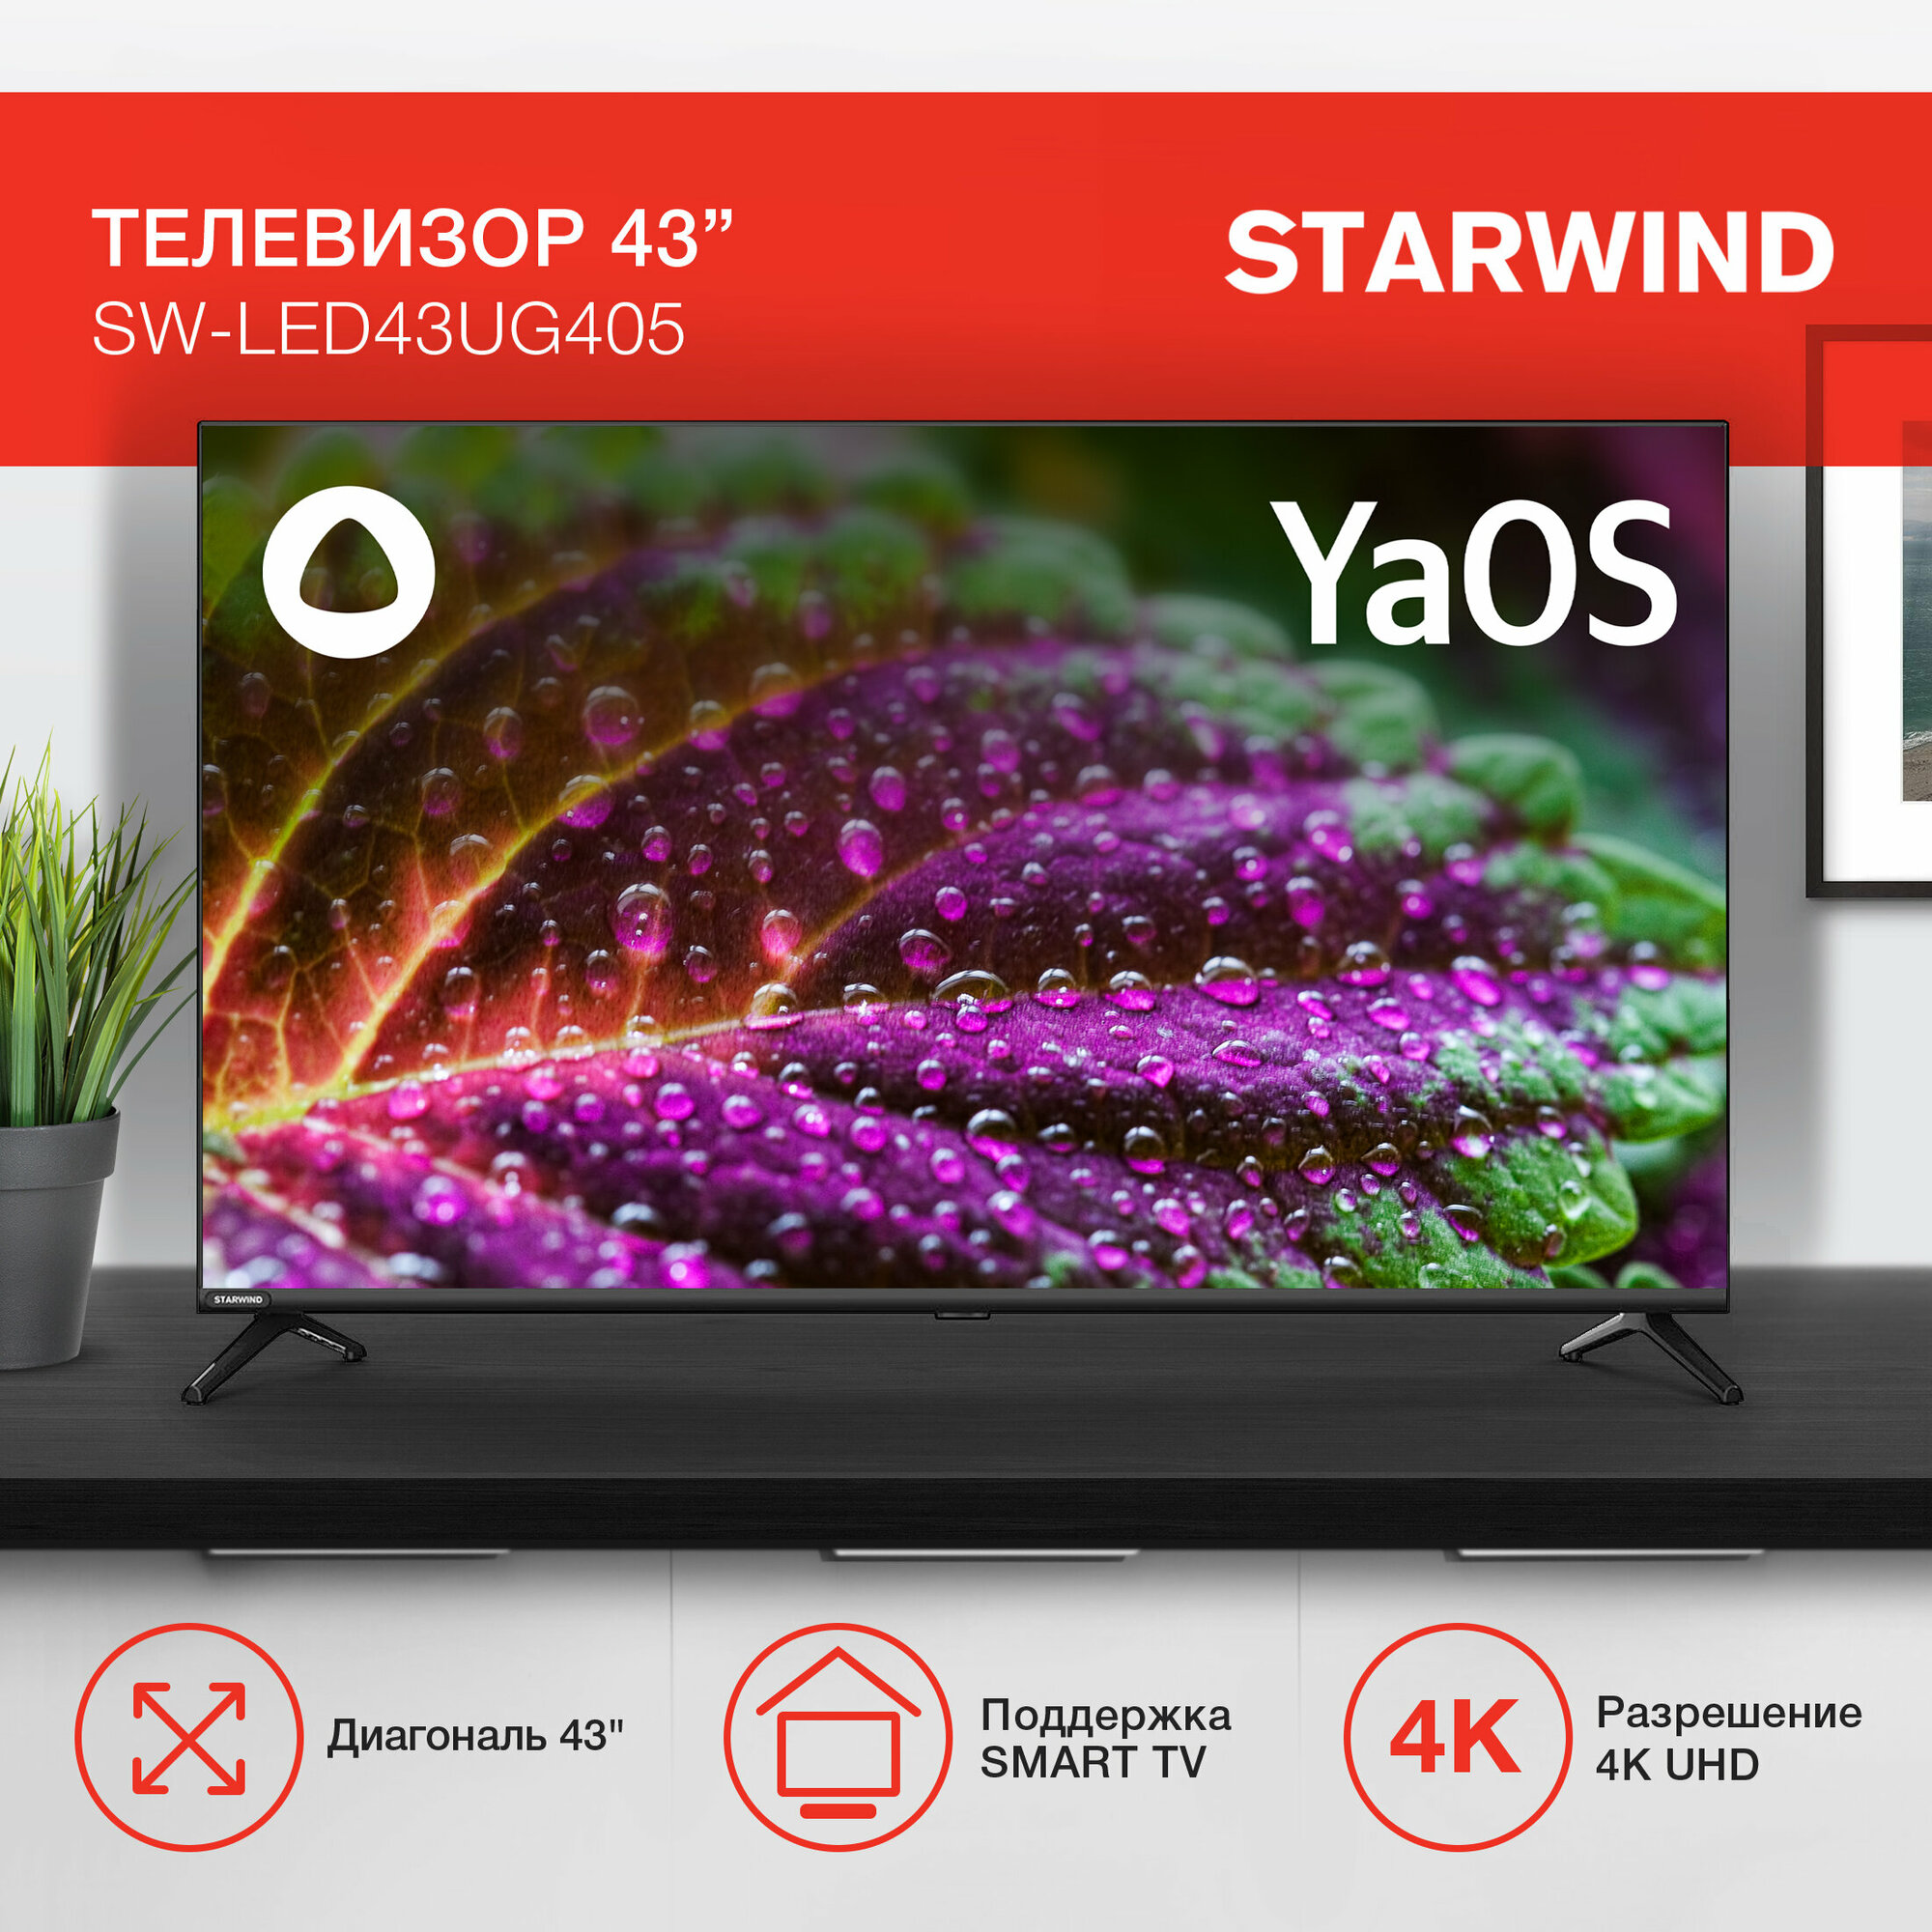 Телевизор LED Starwind 43" SW-LED43UG405 Яндекс. ТВ Frameless черный/4K Ultra HD/60Hz/DVB-T/DVB-T2/DVB-C/DVB-S/DVB-S2/USB/WiFi/Smart TV